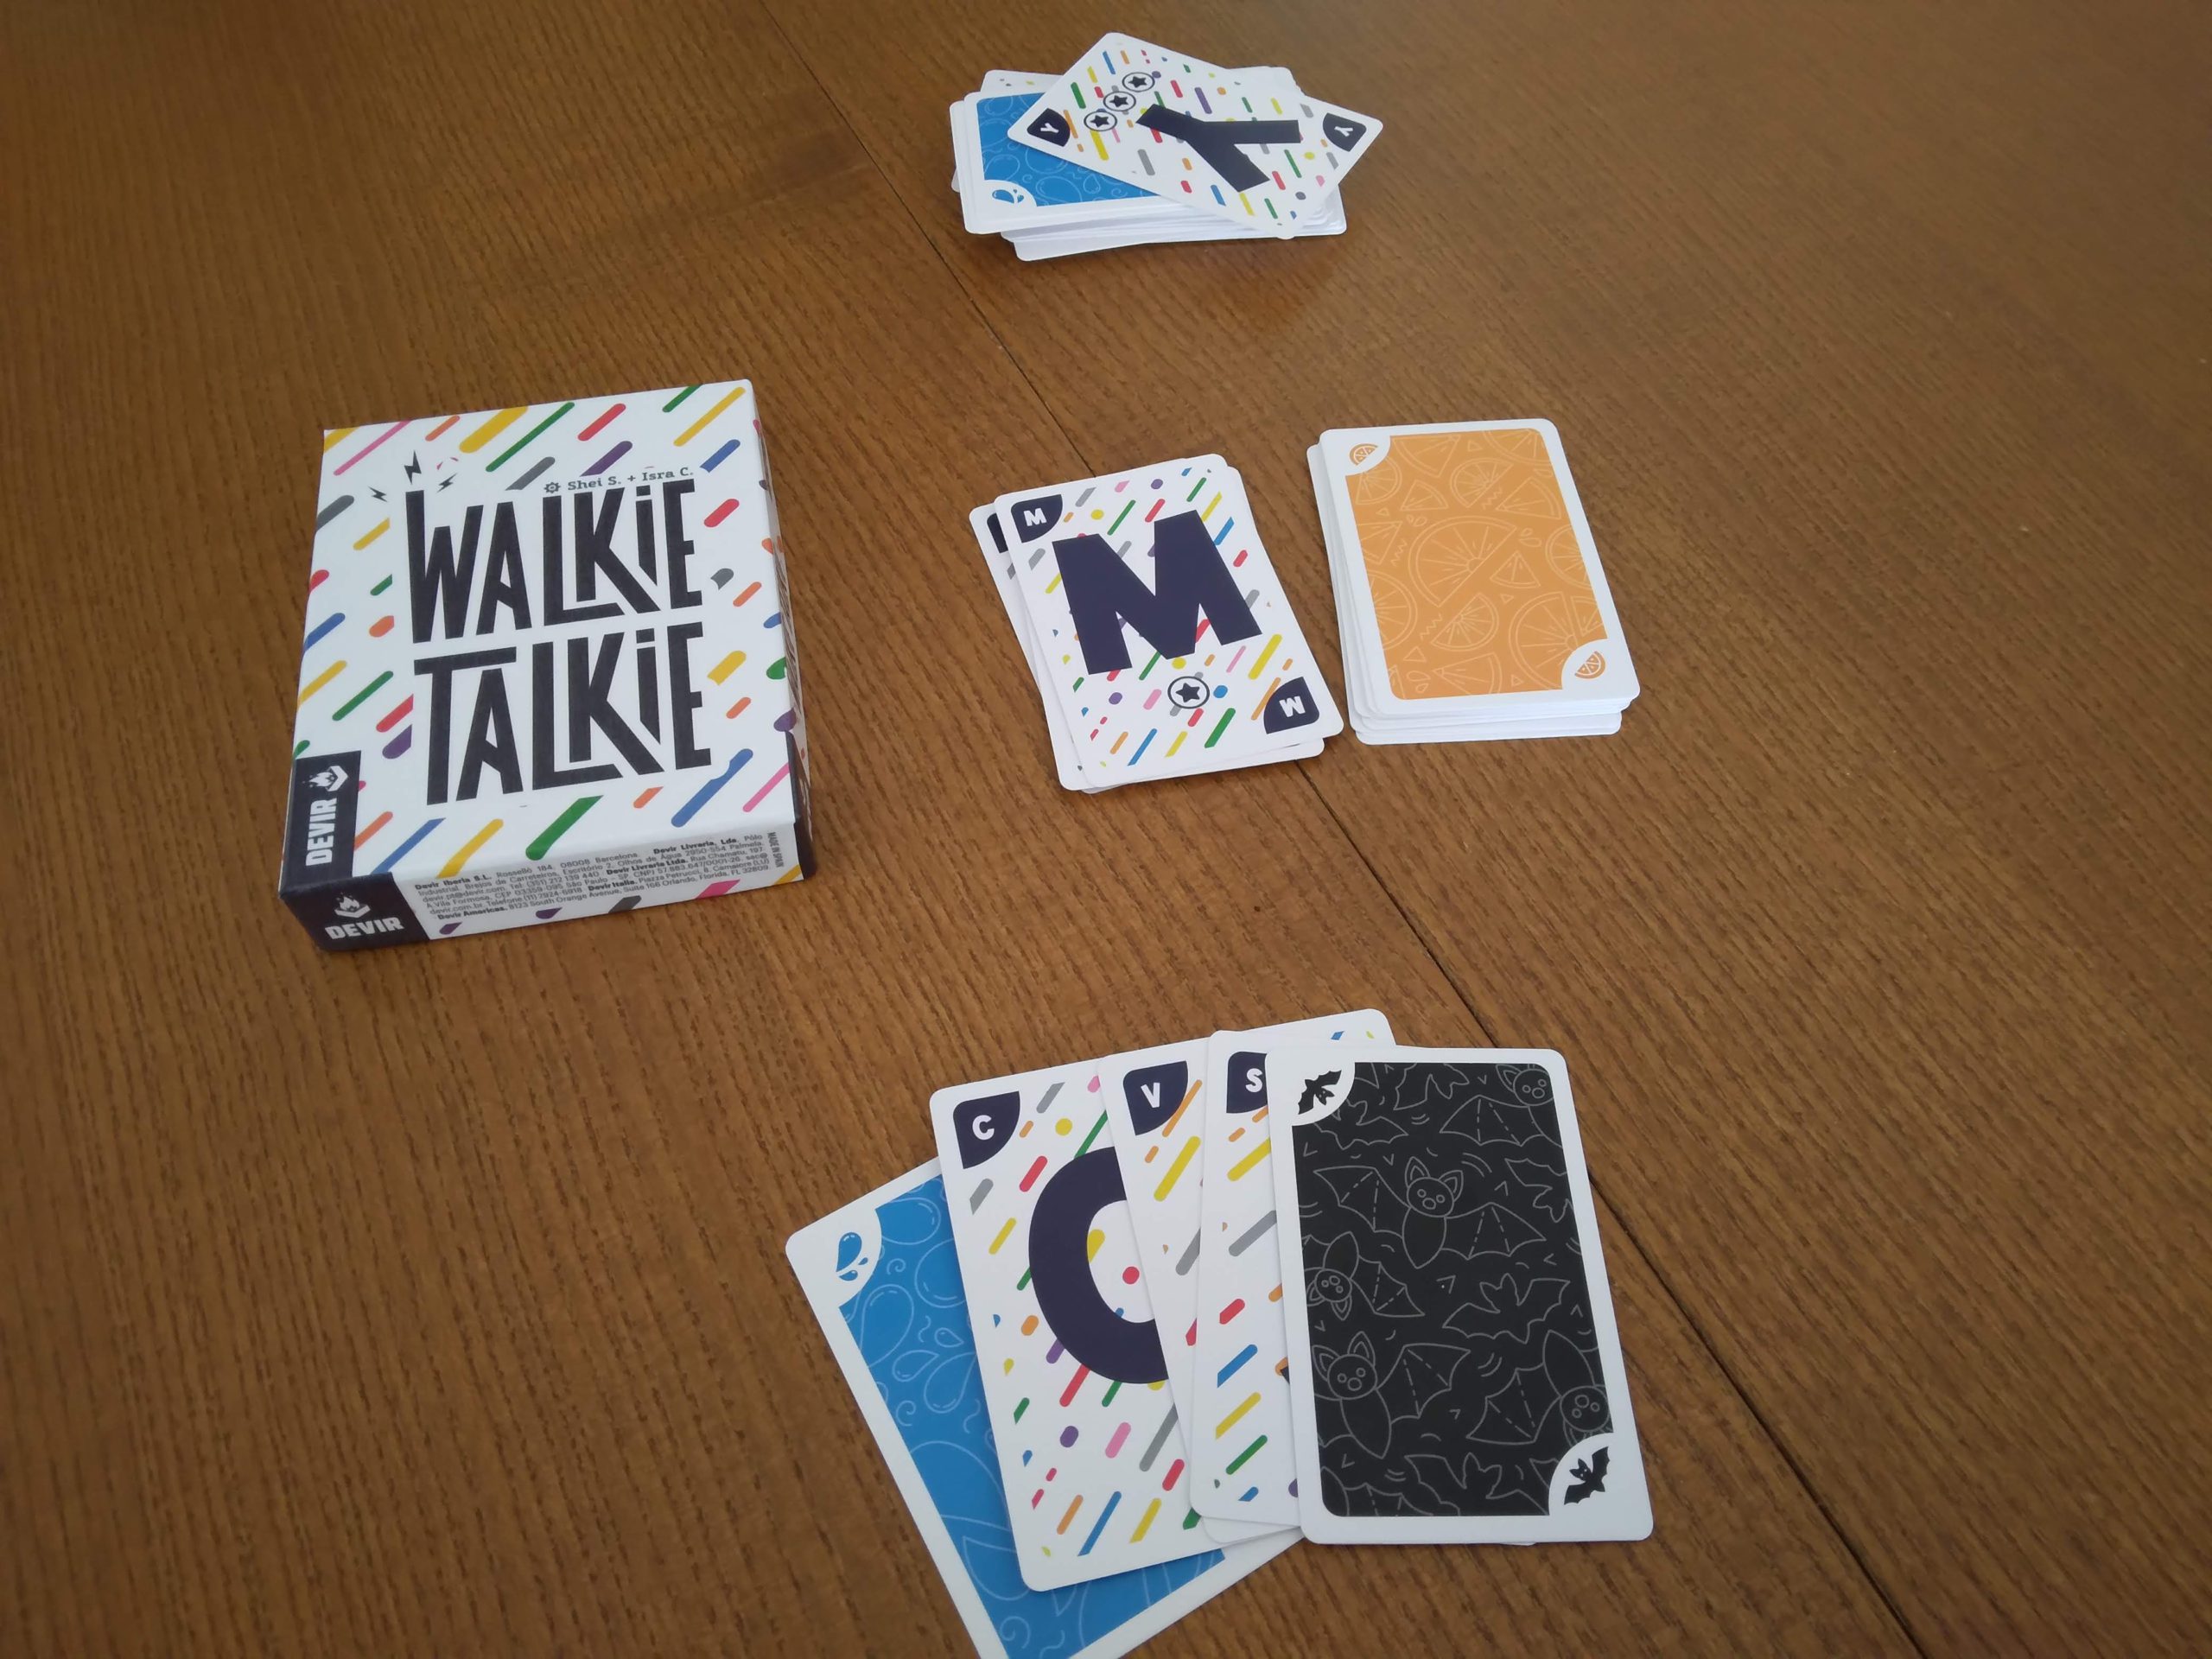 Colocación en mesa de las cartas del juego Walkie Talkie, que por una cara son letras y por la otra cara, color.